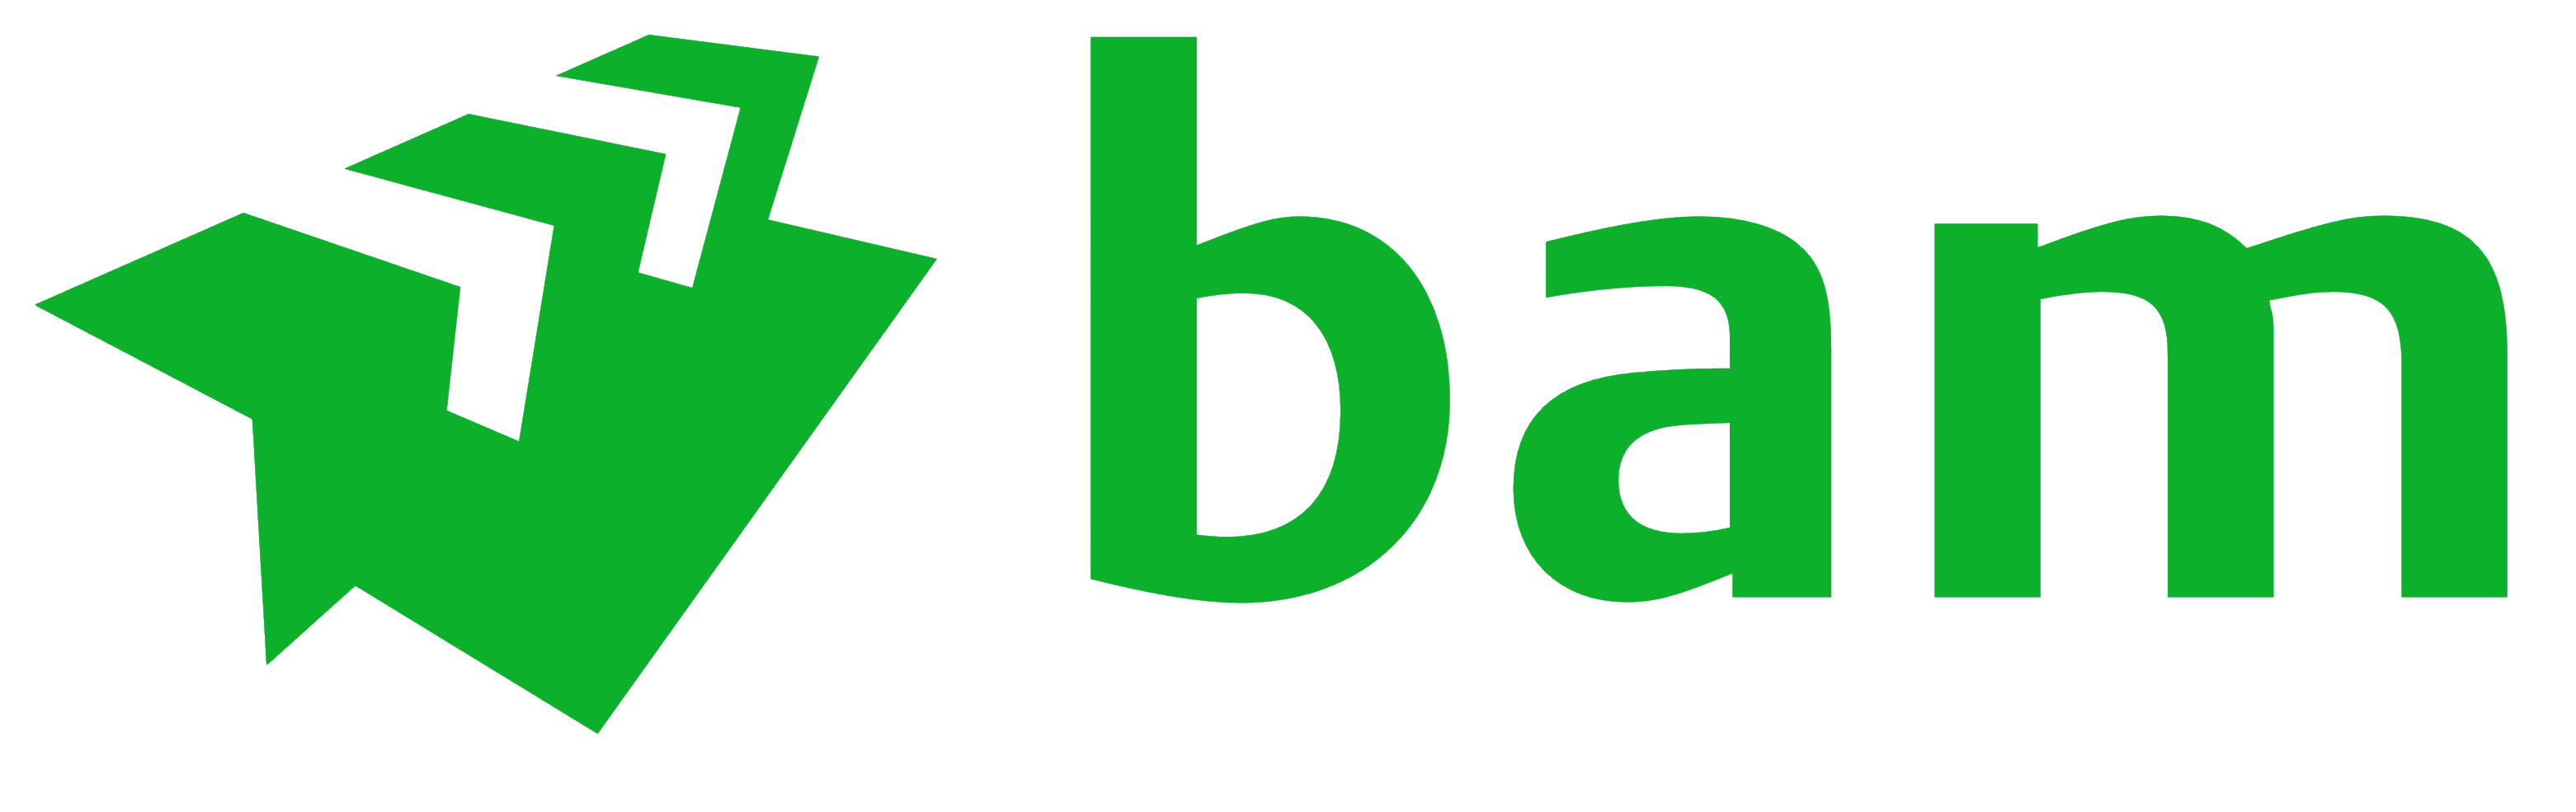 Royal BAM Group logo, logotype